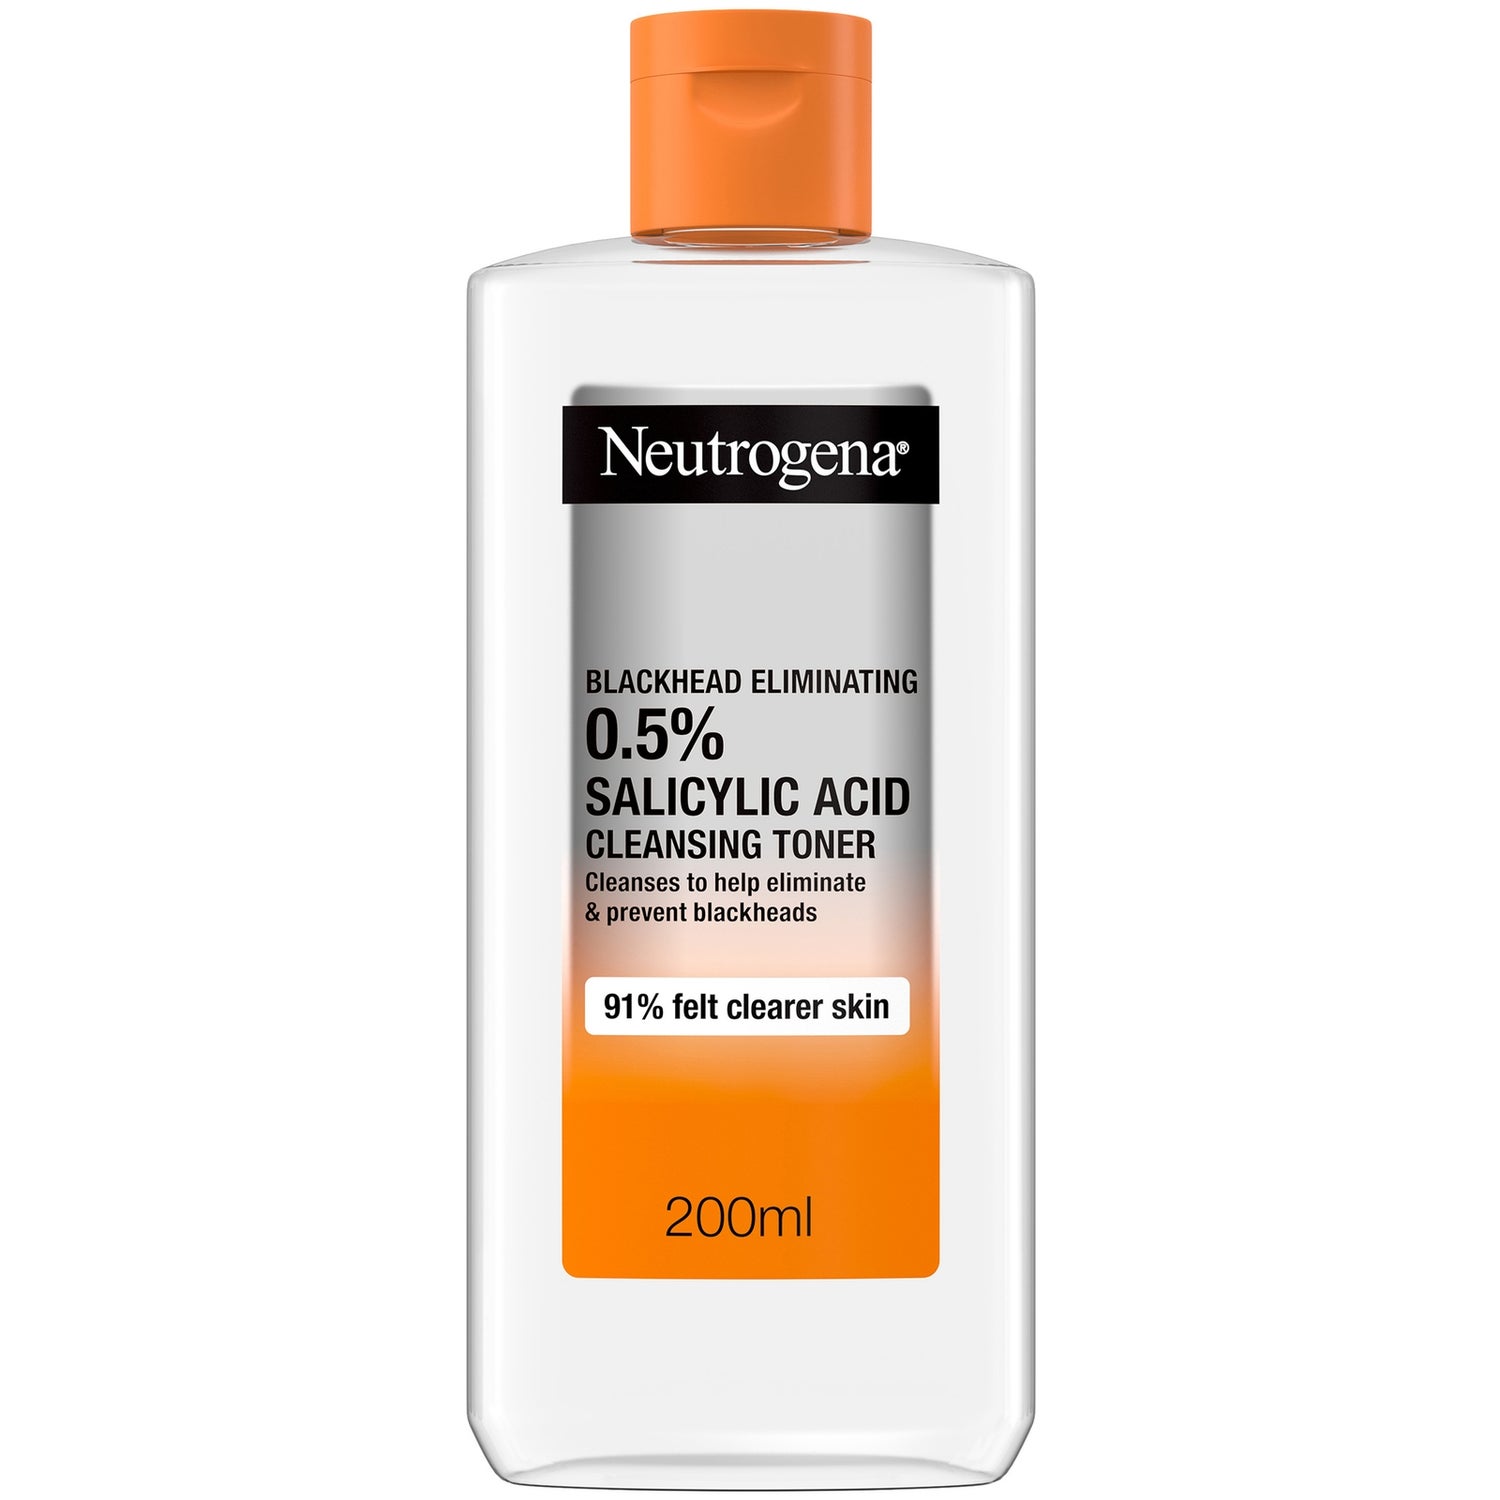 Neutrogena Blackhead Eliminating 0.5% Salicylic Acid Cleansing Toner 200ml